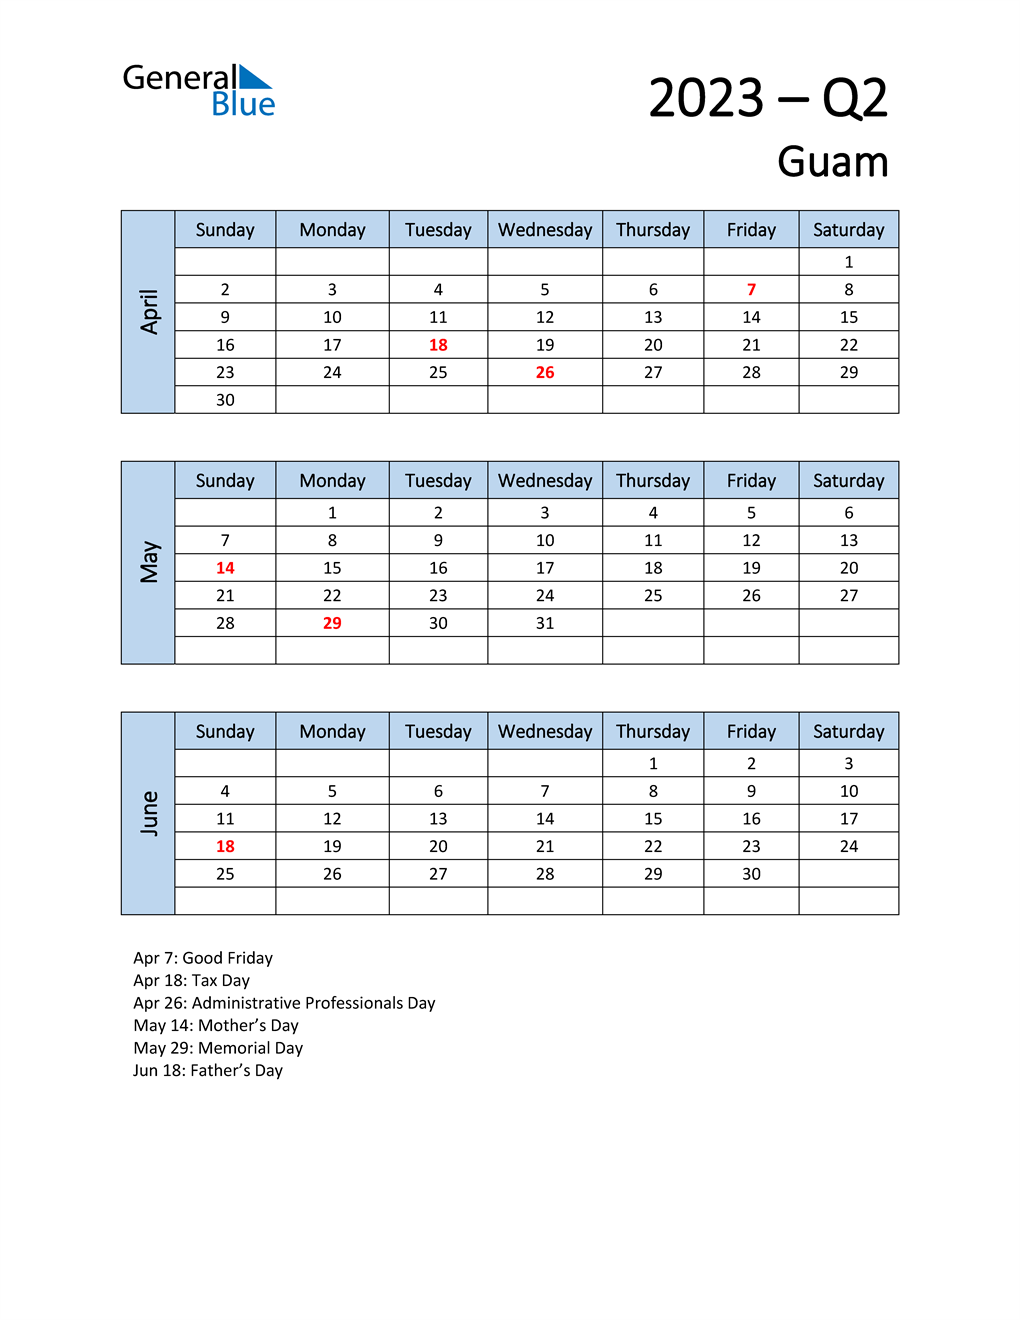  Free Q2 2023 Calendar for Guam